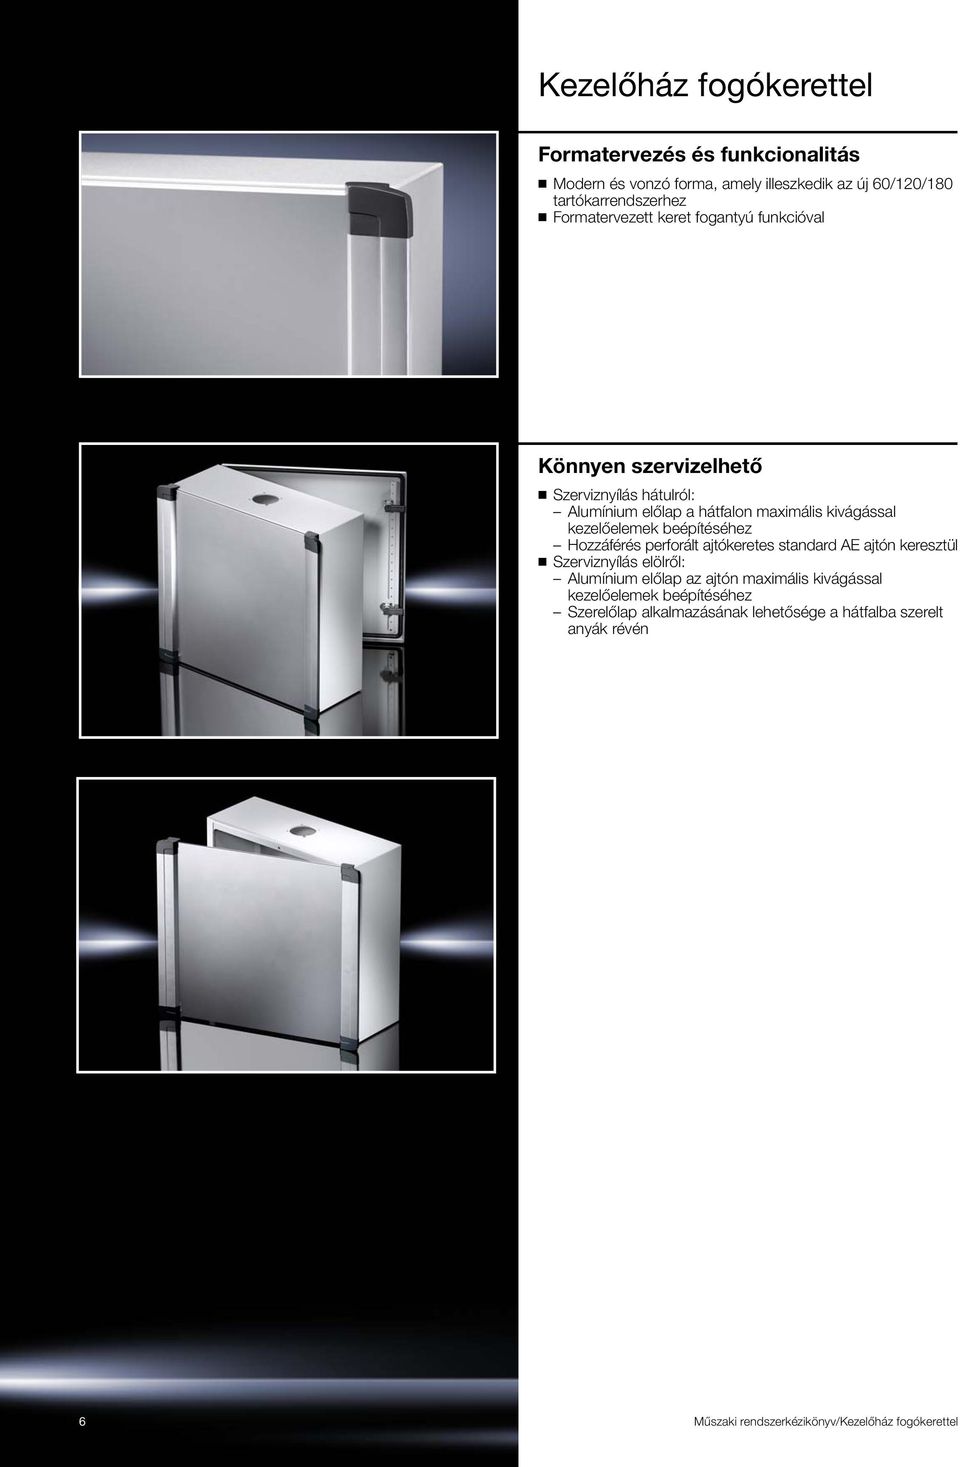 kezelőelemek beépítéséhez Hozzáférés perforált ajtókeretes standard AE ajtón keresztül Szerviznyílás elölről: Alumínium